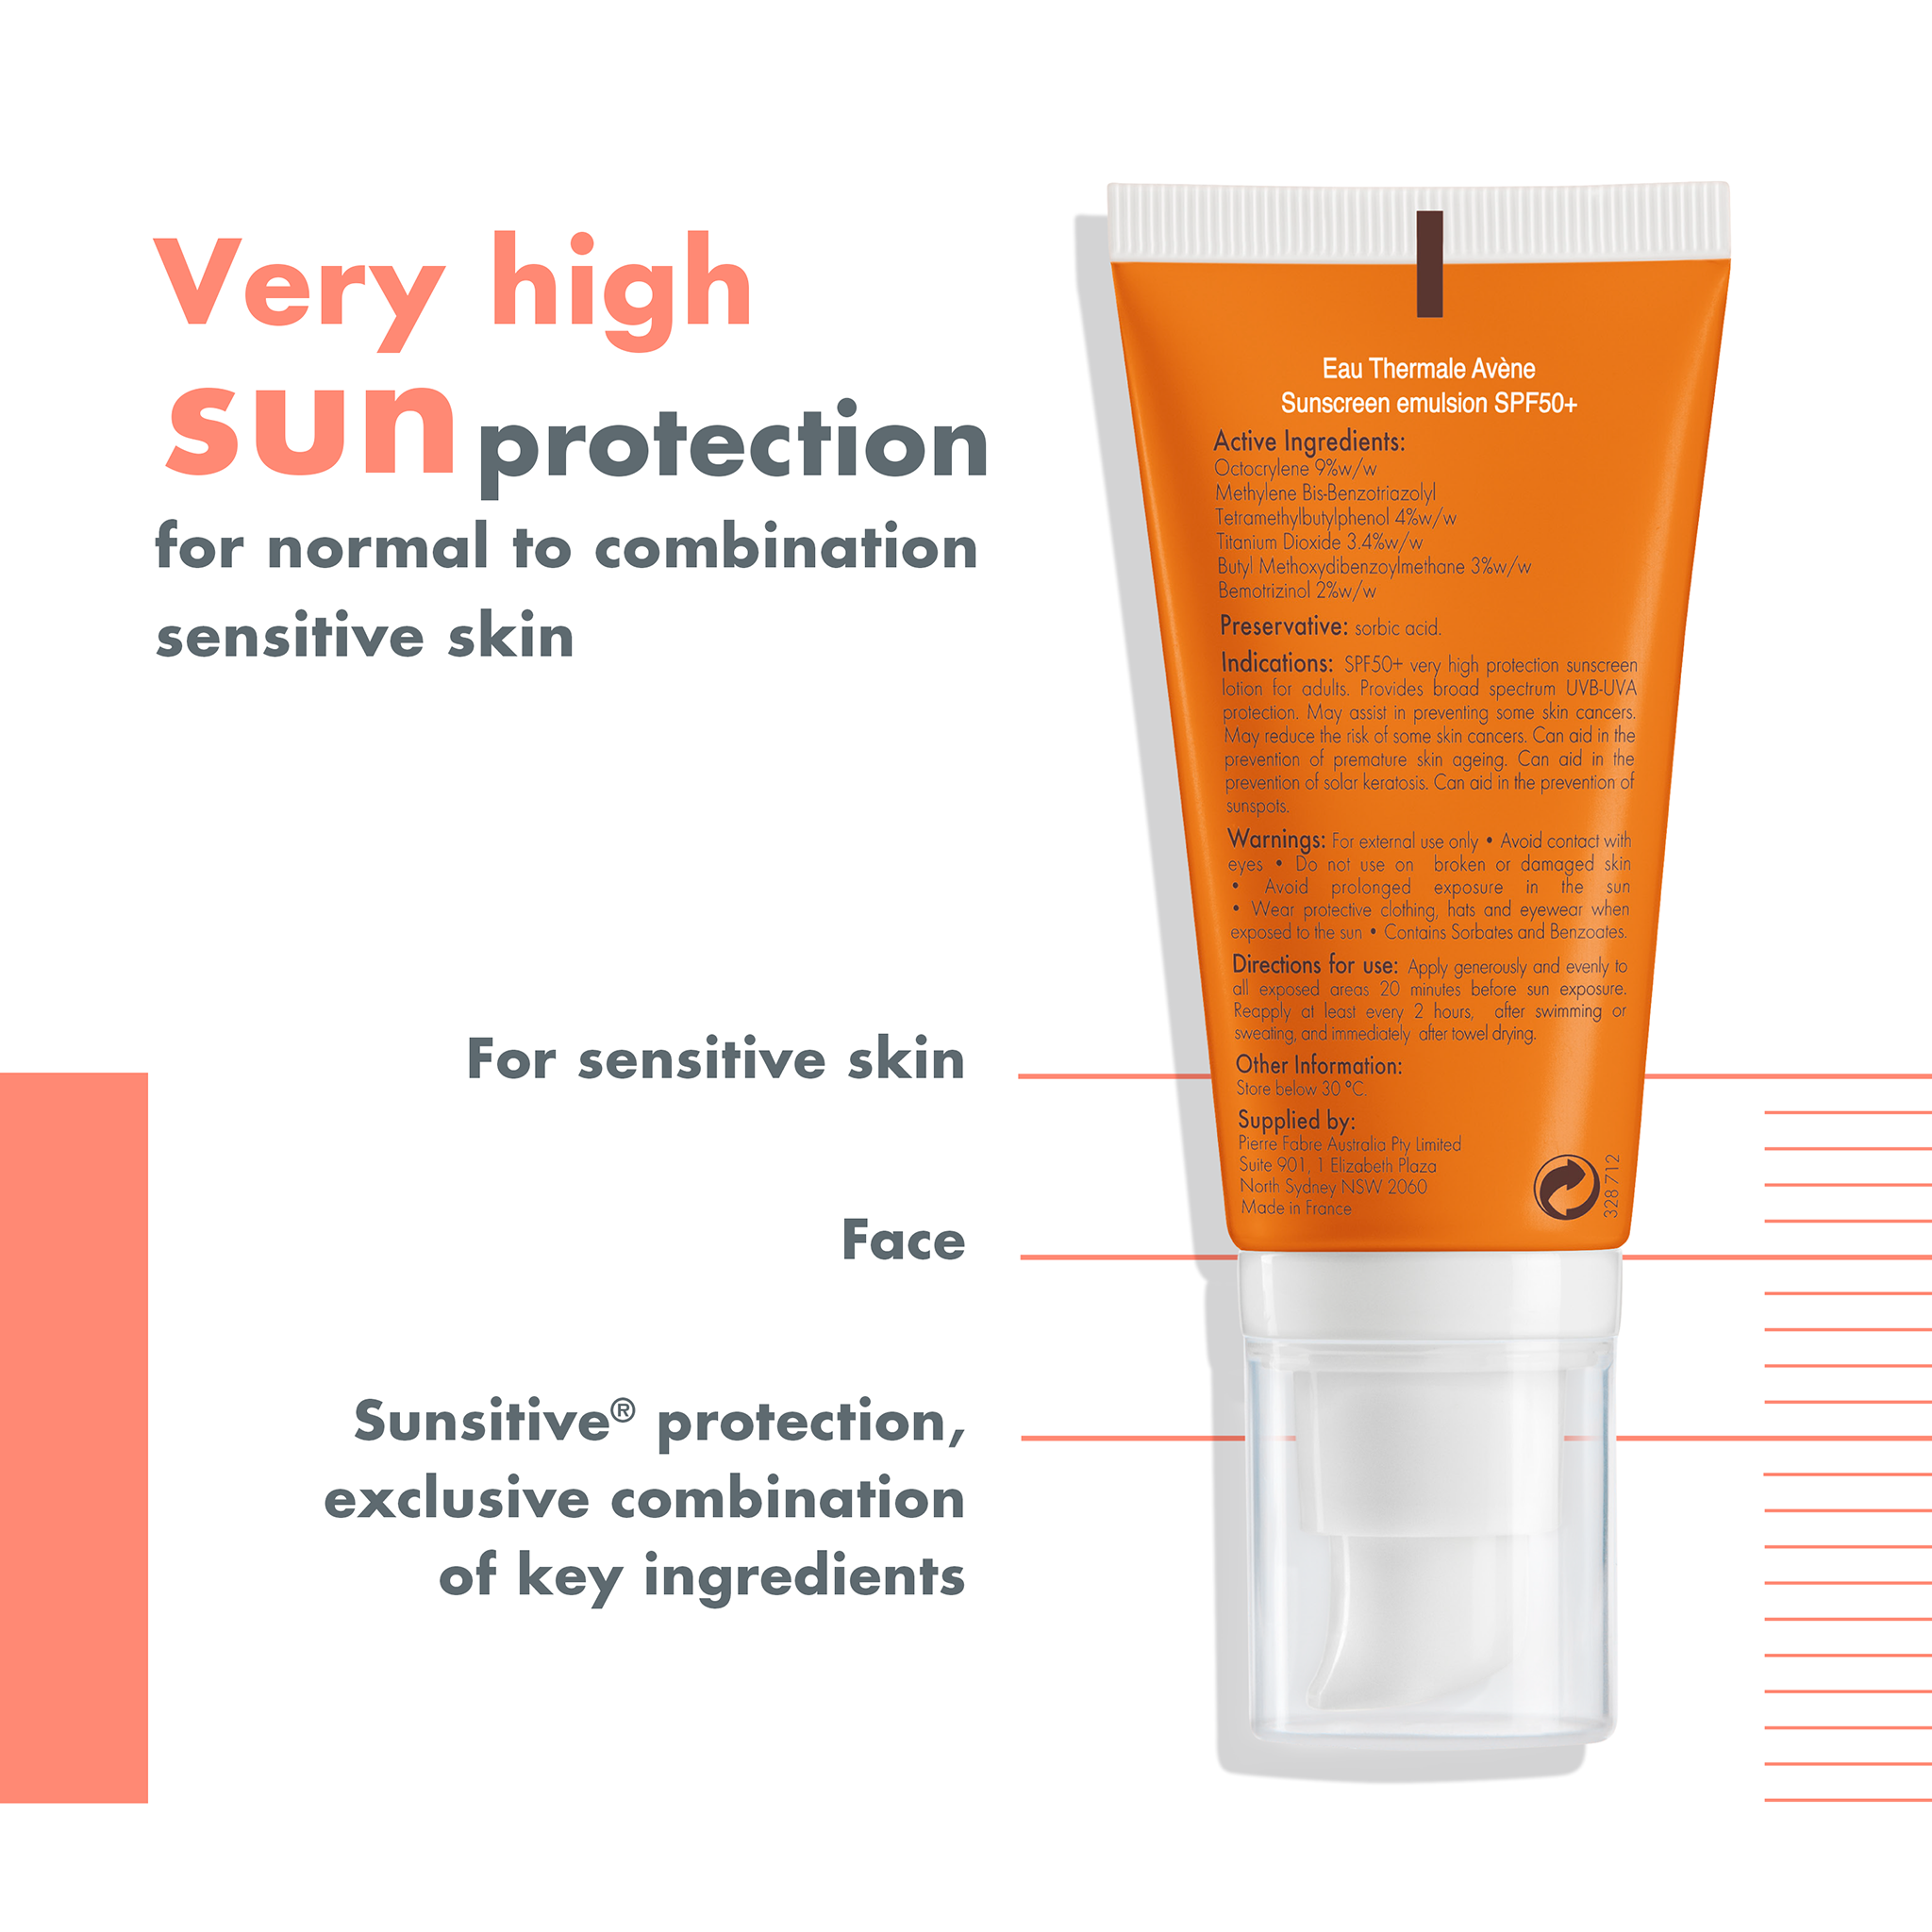 Avène Sunscreen Emulsion Face SPF 50+ 50ml - For Sensitive Skin